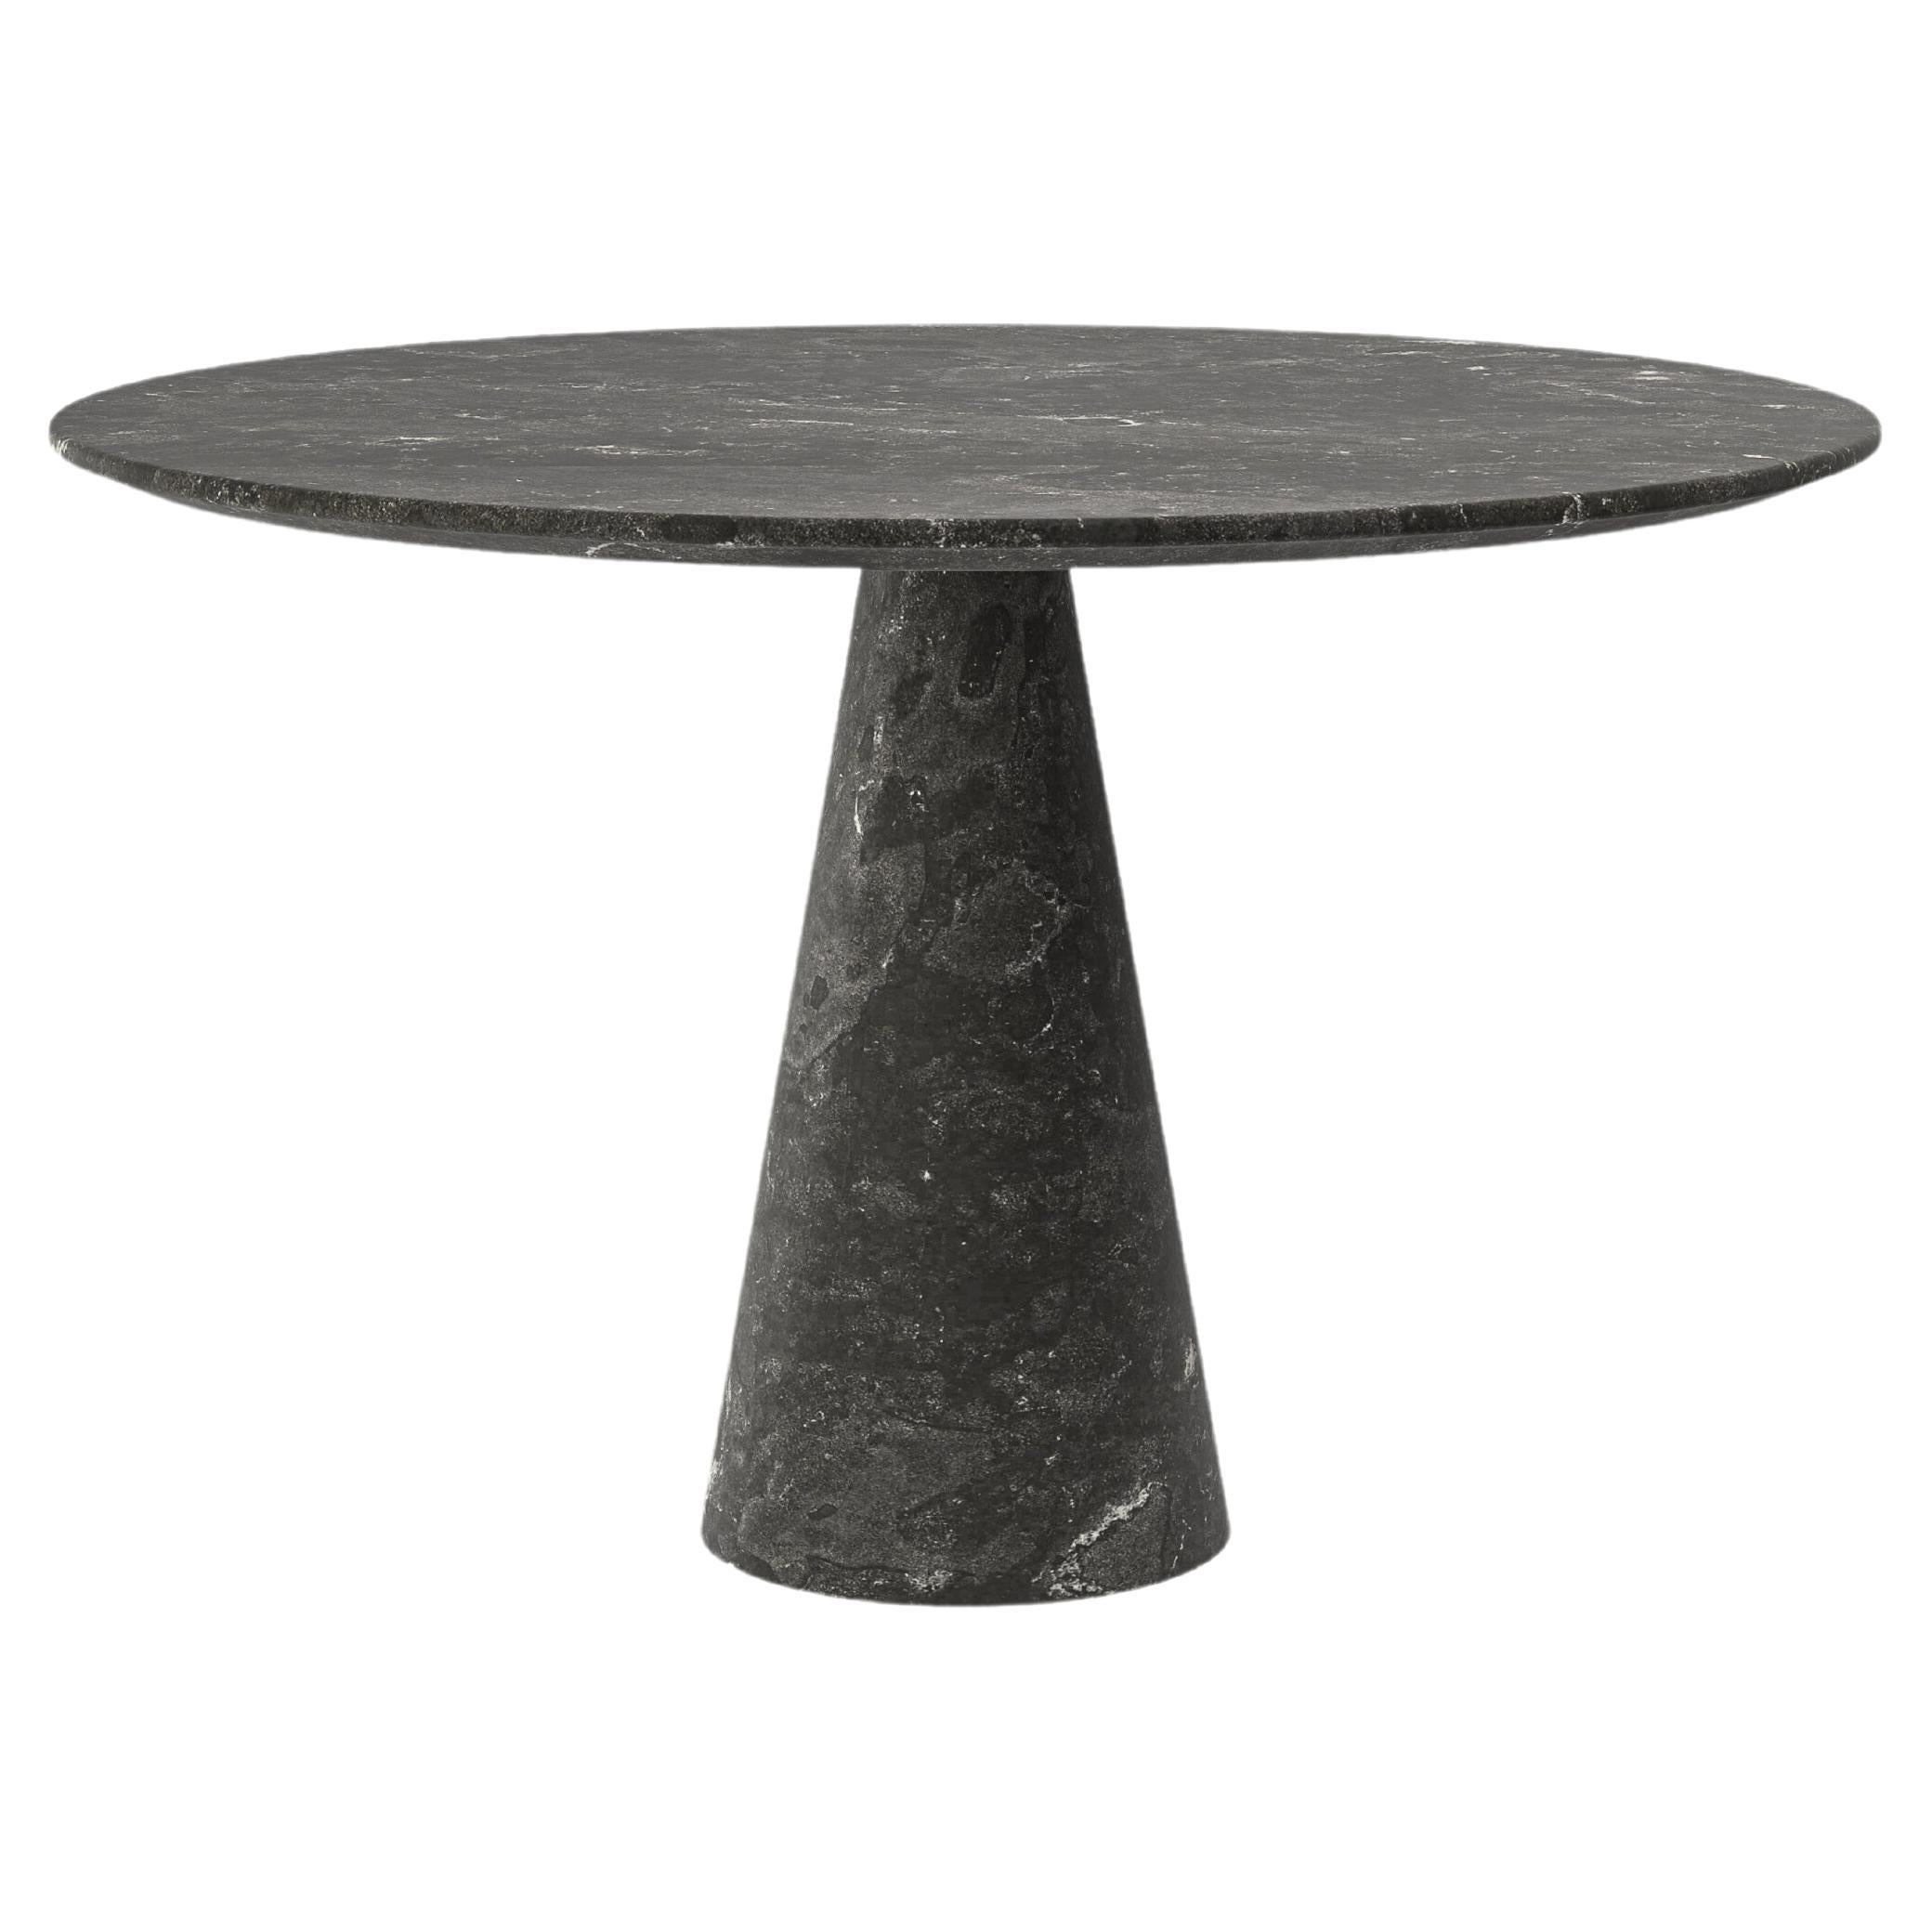 FORM(LA) Cono Round Dining Table 60”L x 60"W x 30”H Nero Petite Granite For Sale